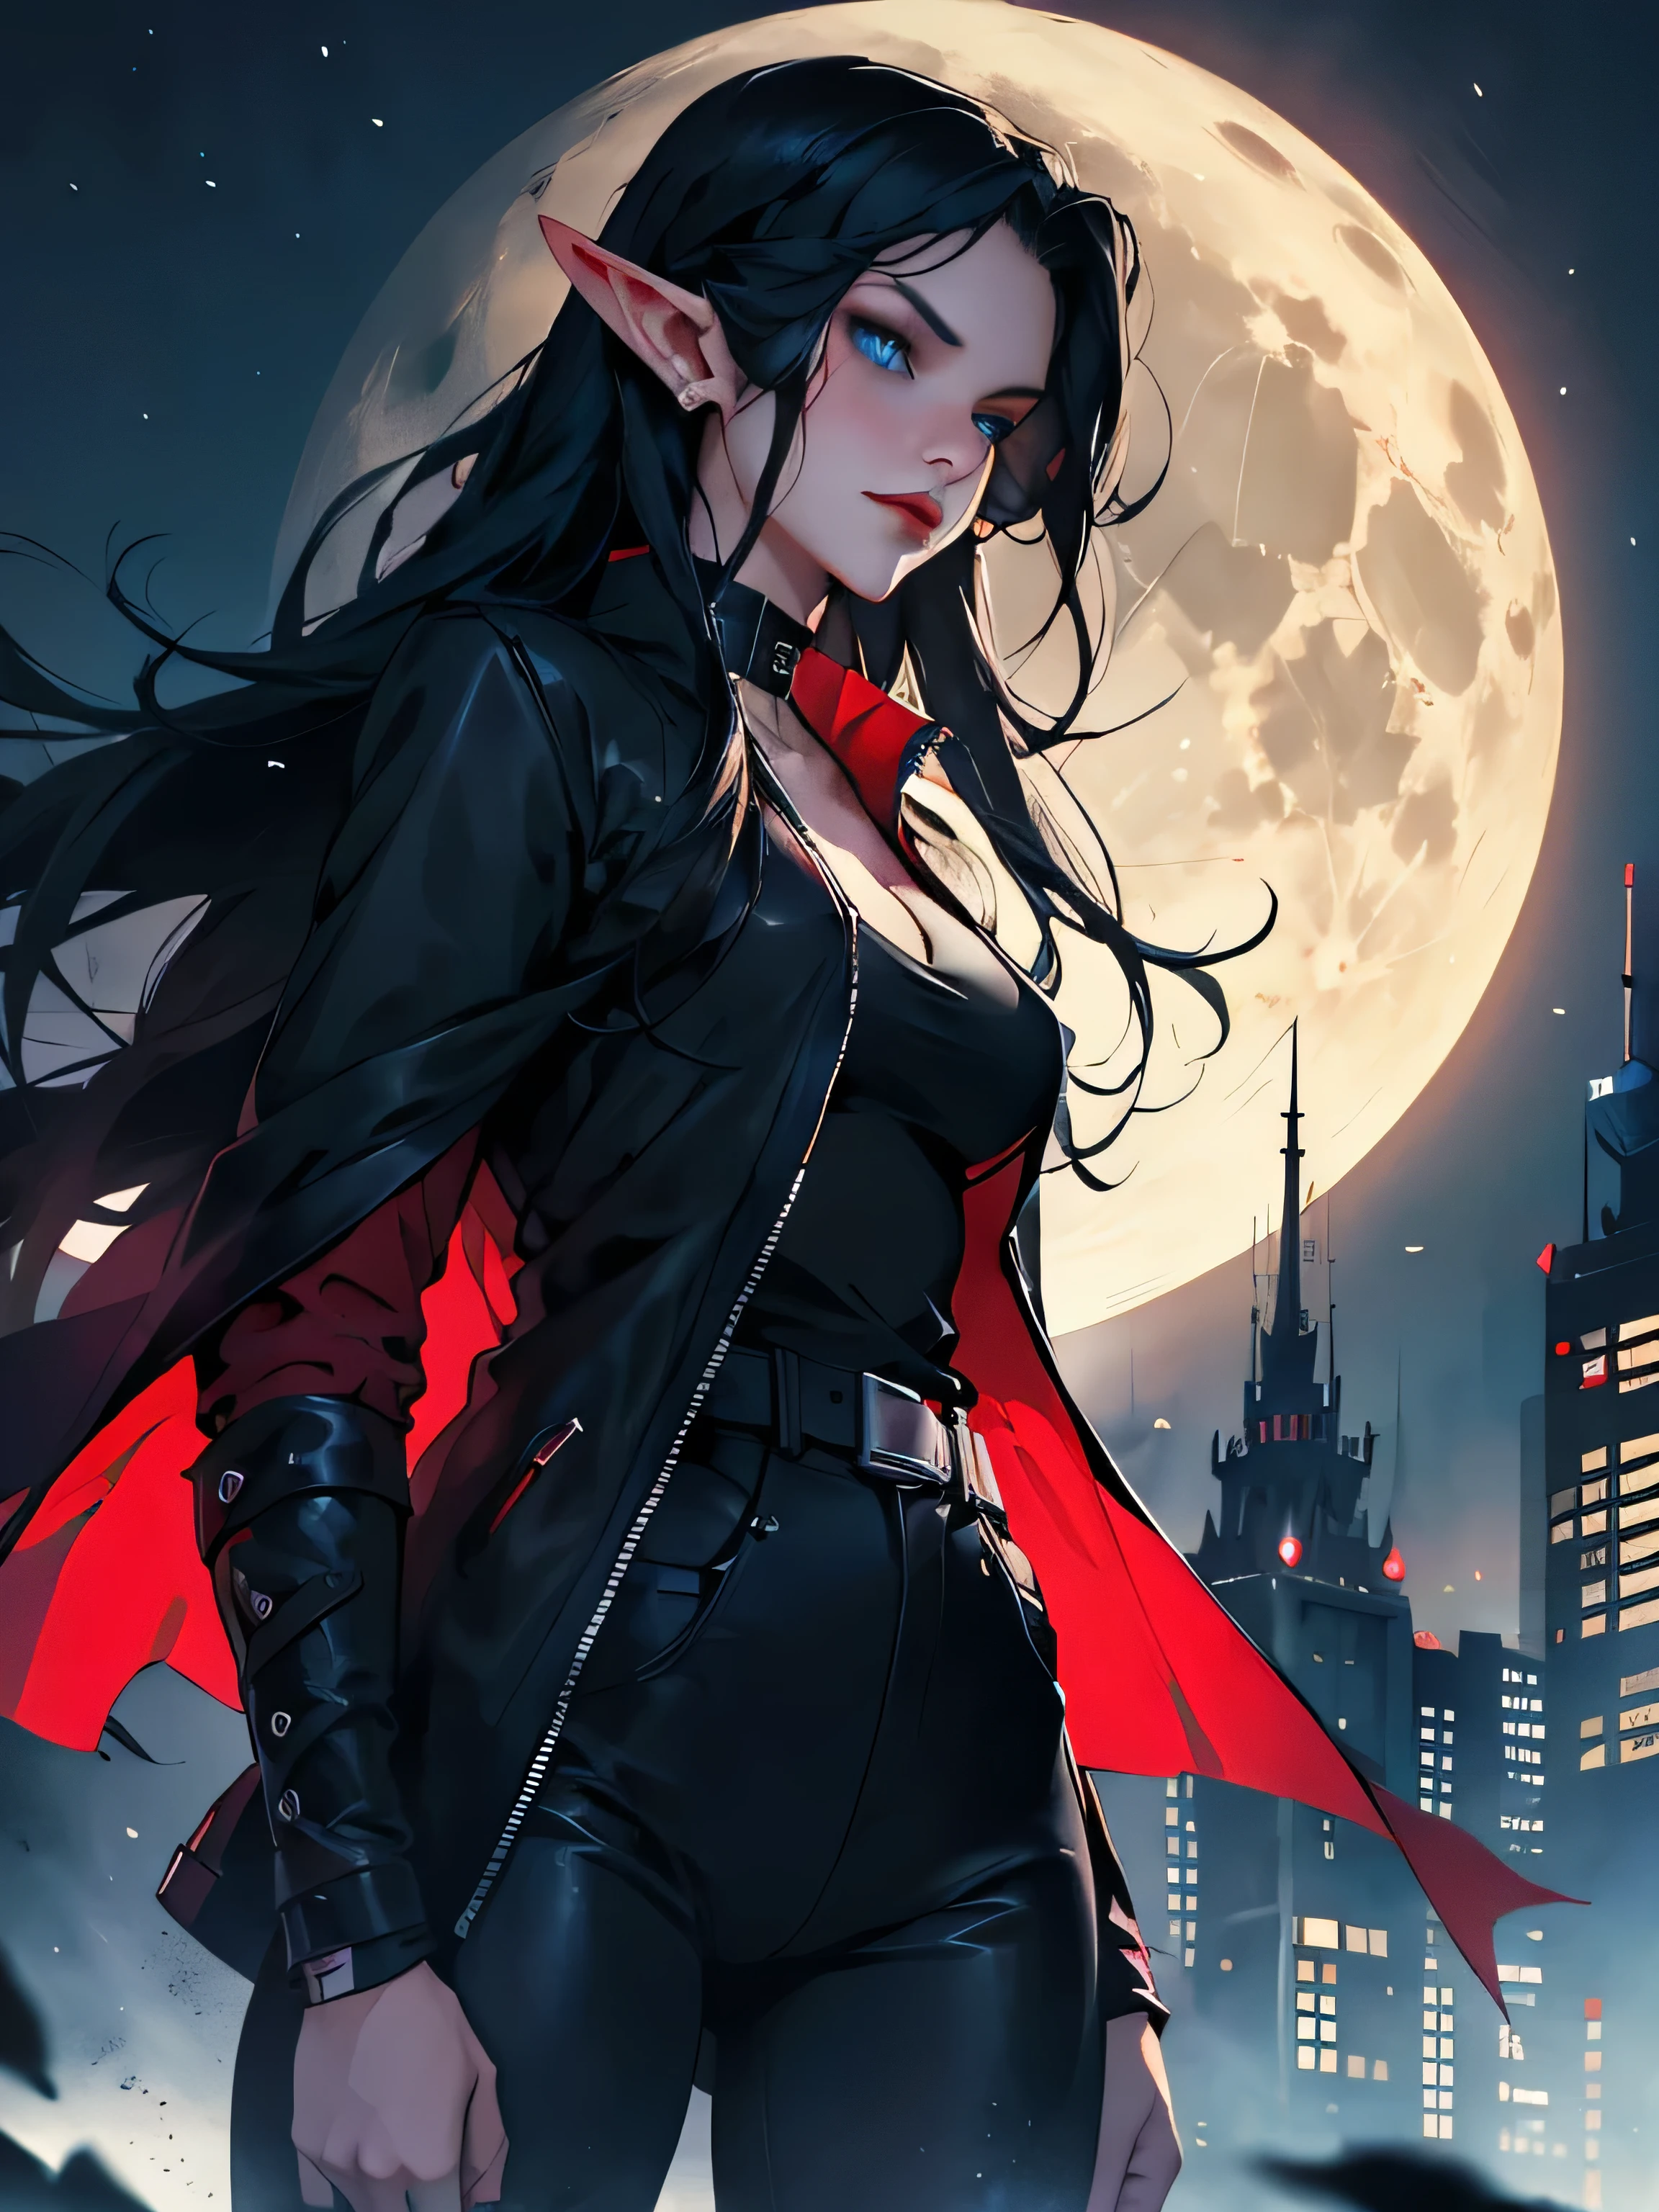 女精靈, 黑色長髮, 藍眼睛, 黑色哥德式項圈, 紅色夾克, 黑色襯衫, 紅唇, 蒙特內哥. 細緻的眼睛, 尖耳朵. 城市夜晚背景. 滿月.